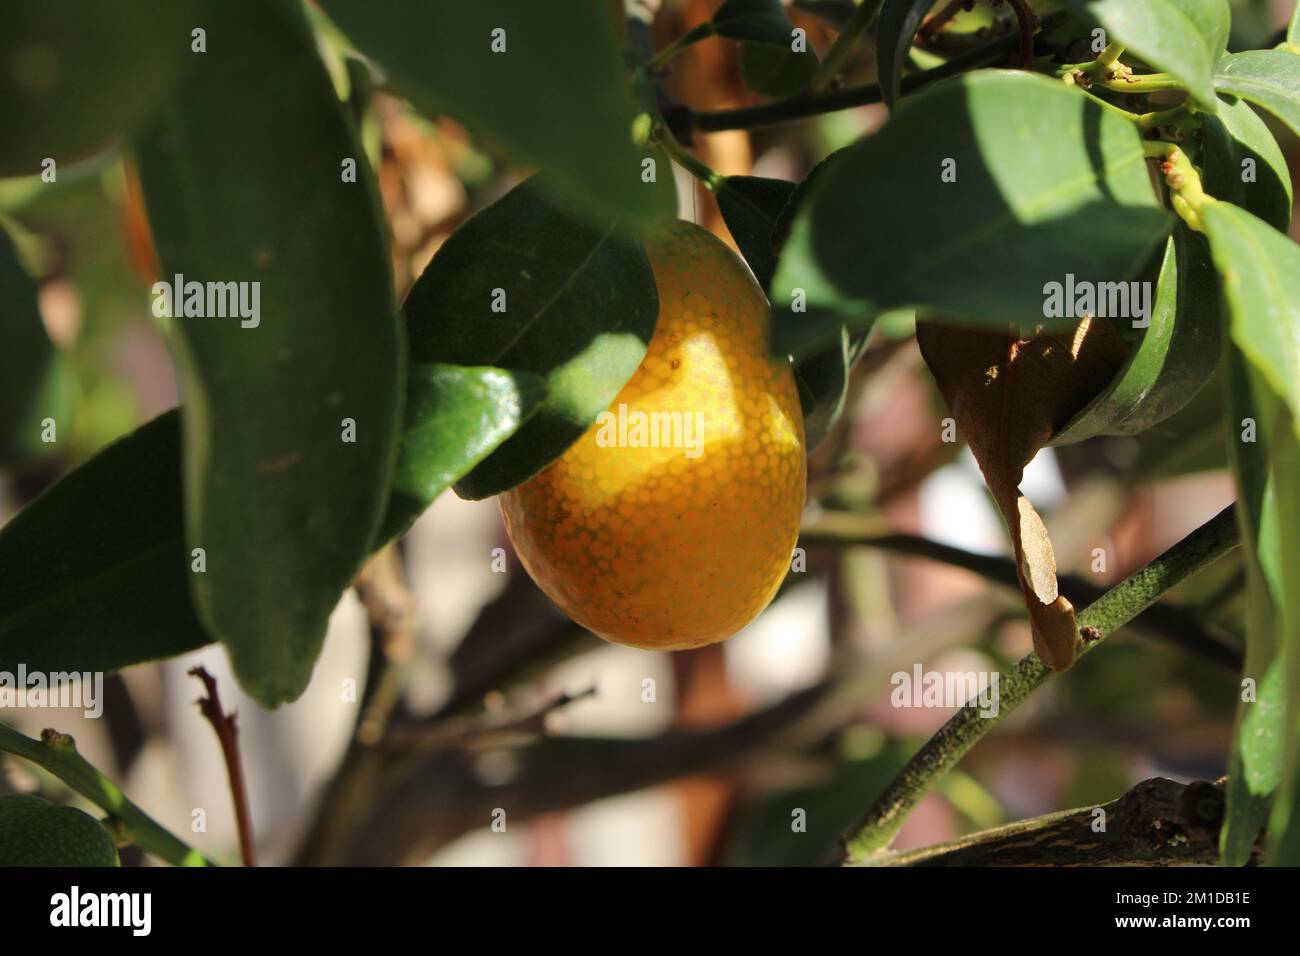 kumquat, cumquat, mandarino cinese, chinese mandarin Stock Photo